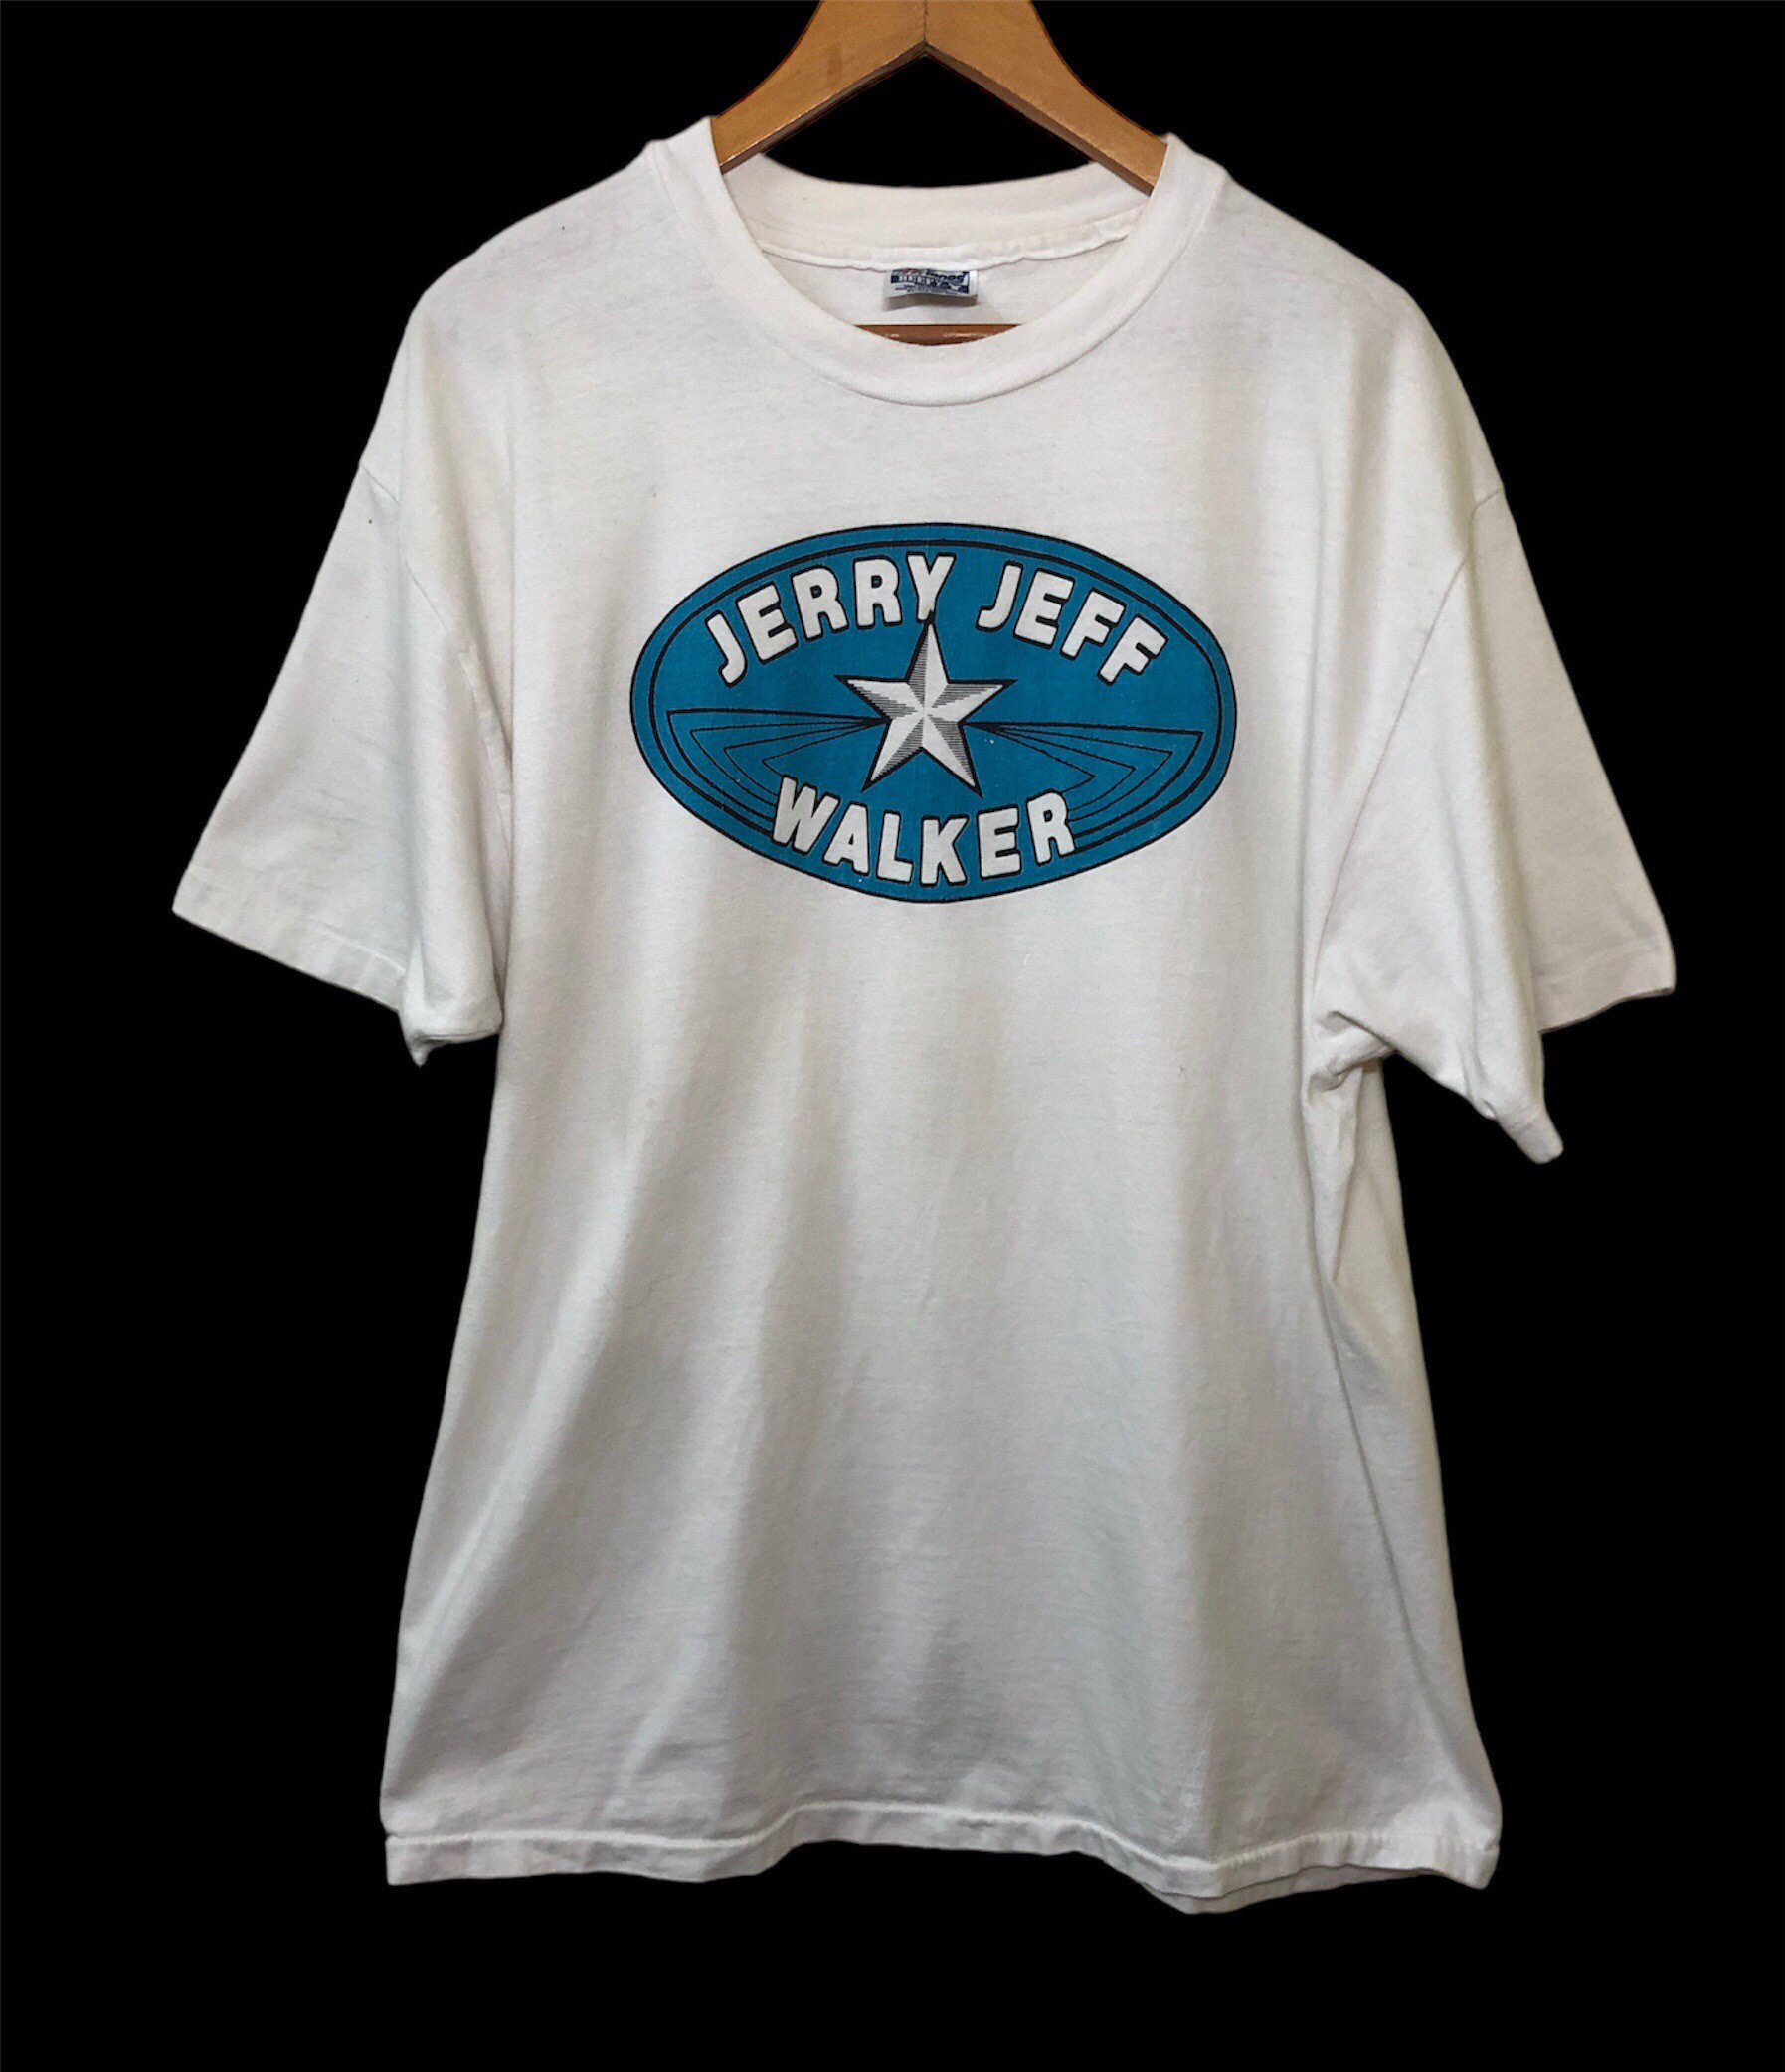 Vintage 90s Jerry Jeff Walker Promo Album Tour Concert Album T Shirt XL Size